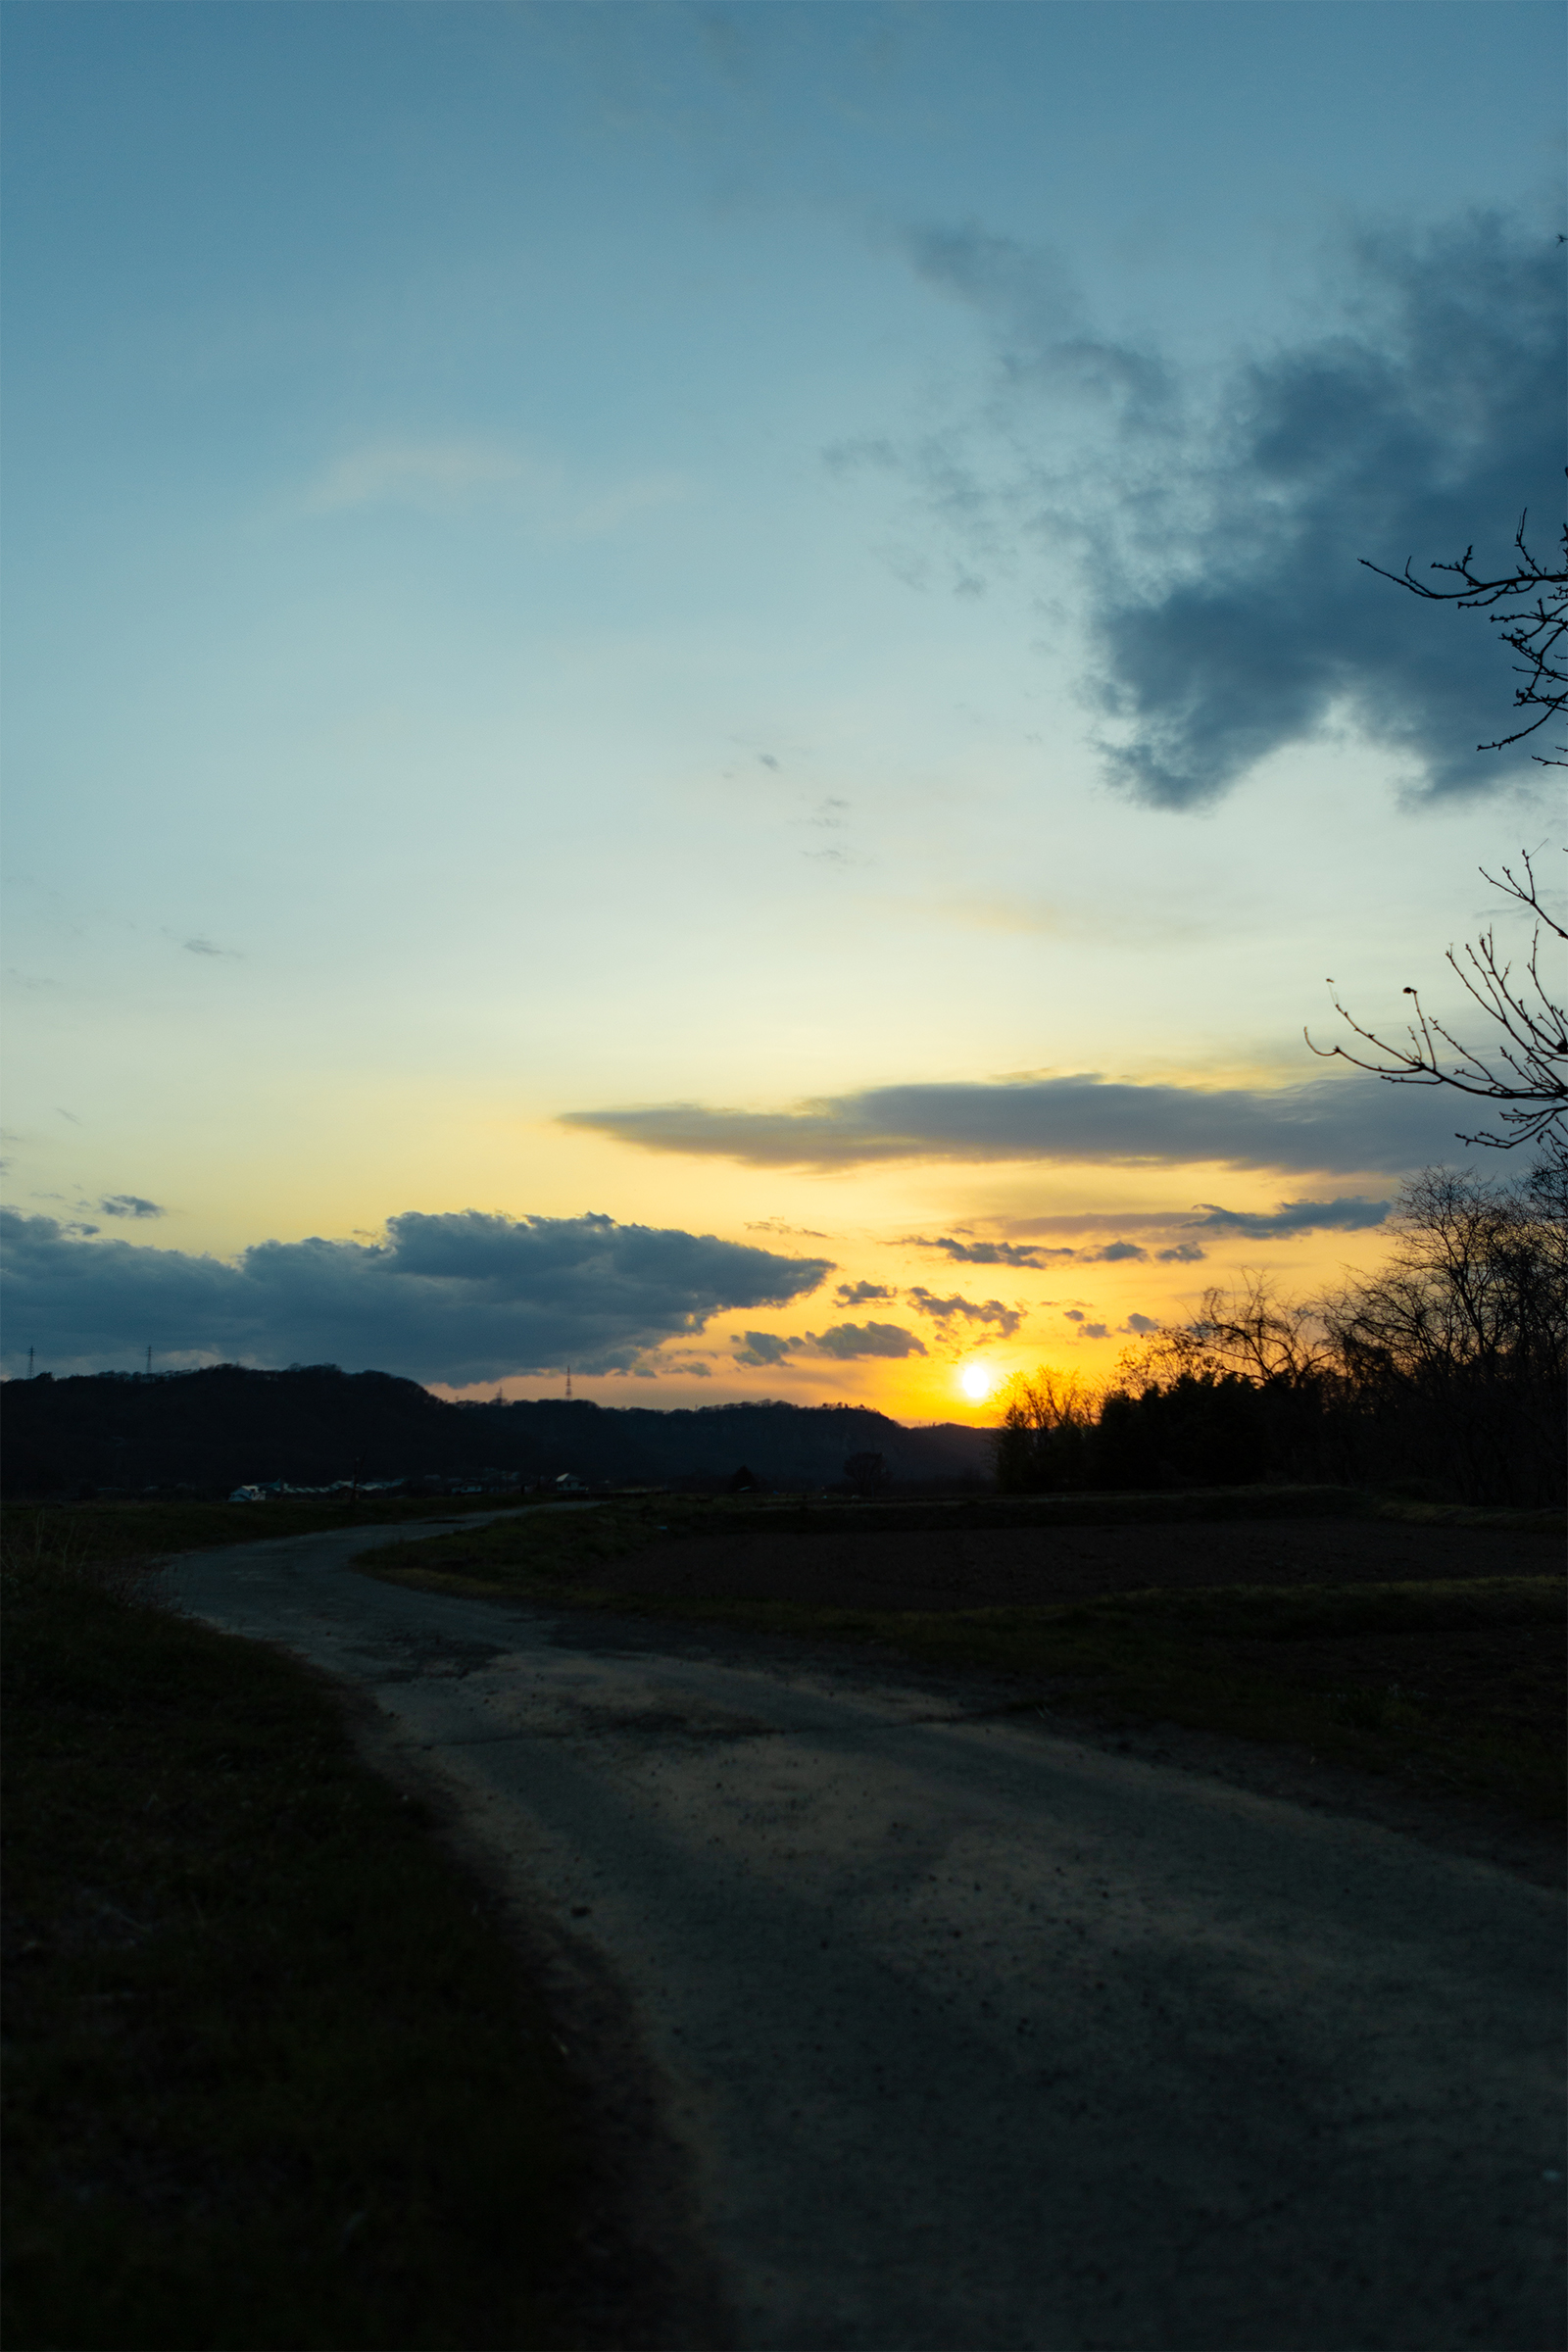 田舎道と夕日 夕焼け 02 無料の高画質フリー写真素材 イメージズラボ